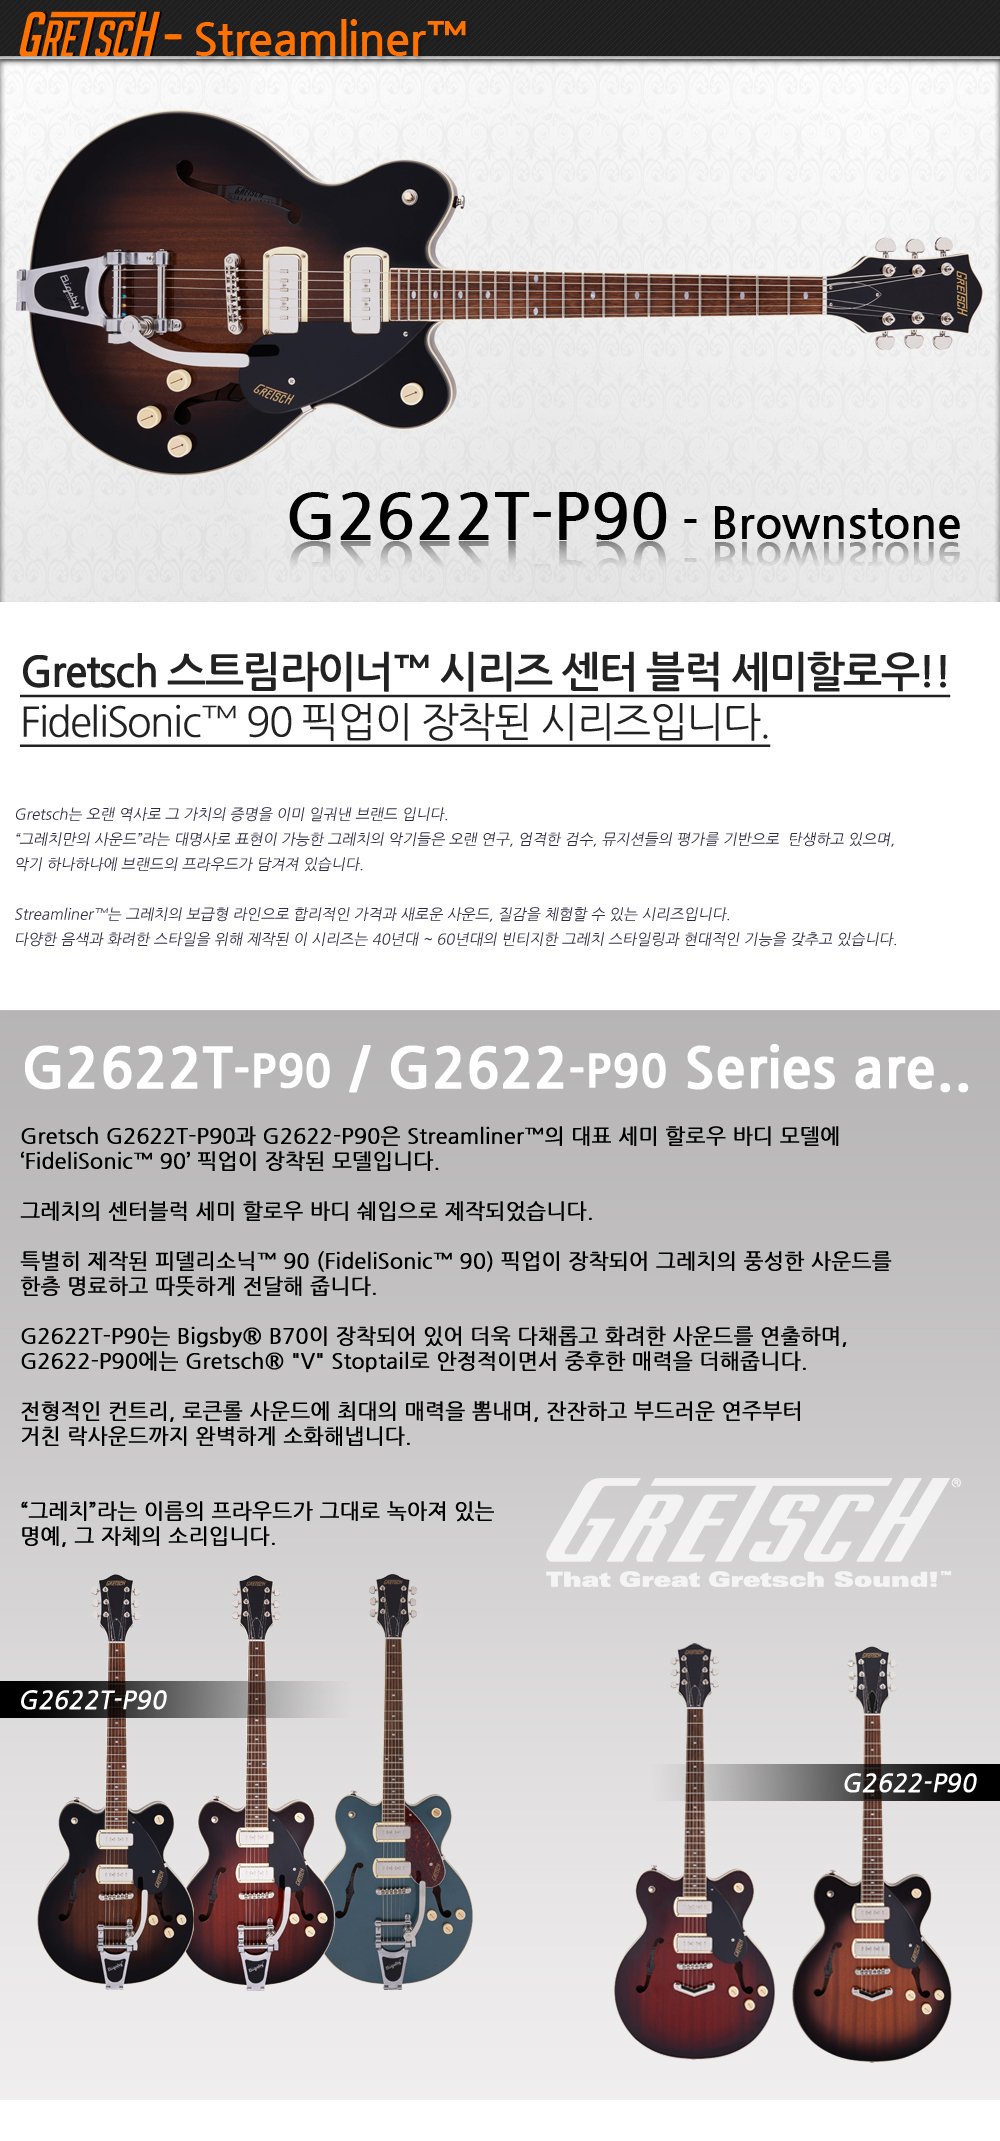 Gretsch-G2622T-P90-Brownstone_1_171654.jpg